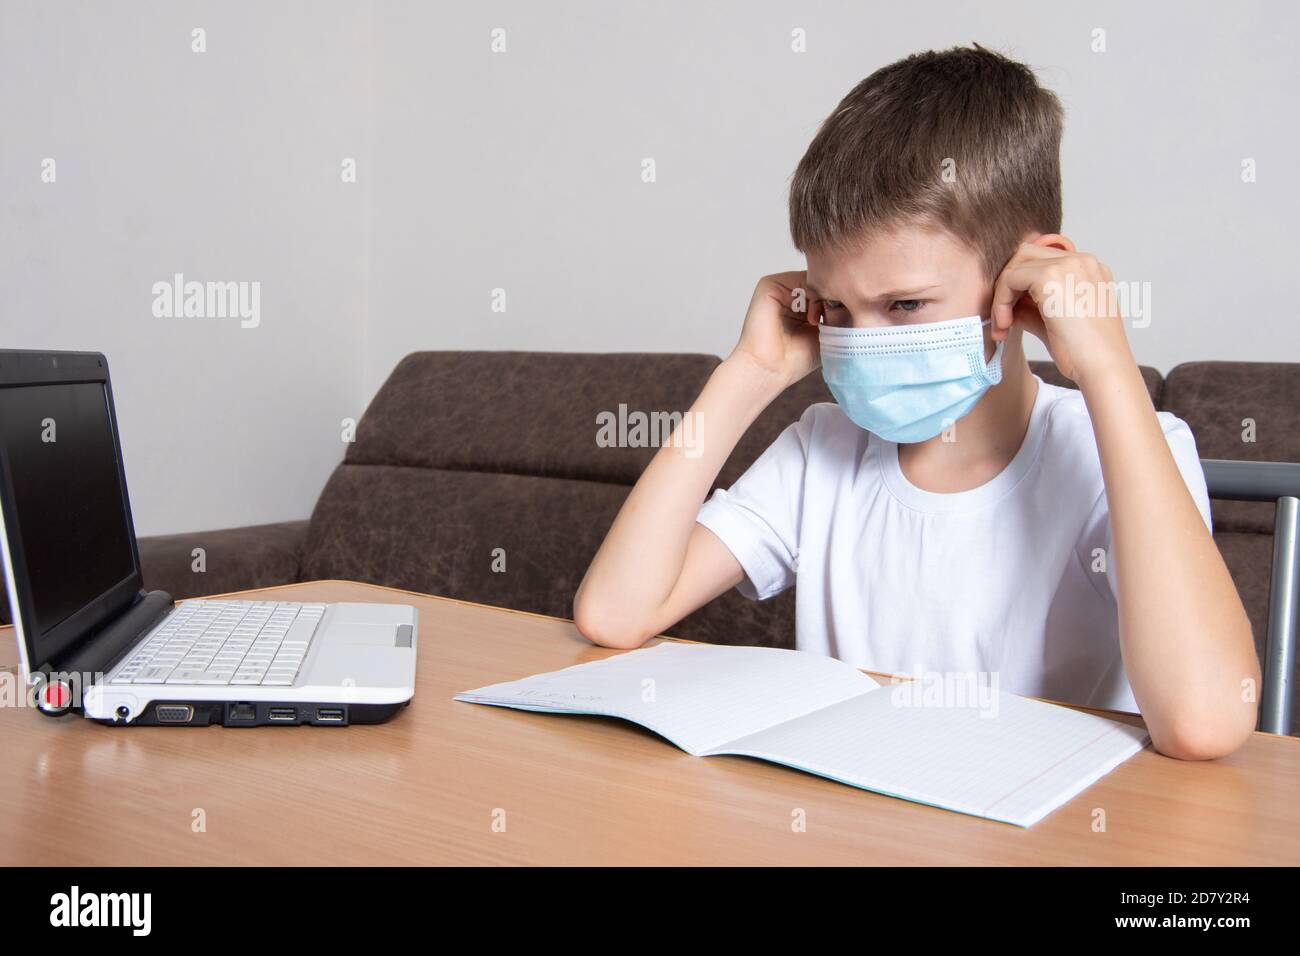 Un enfant dans un masque de protection sur son visage regarde disgrâce à un ordinateur portable, un garçon apprend à distance en ligne à la maison Banque D'Images